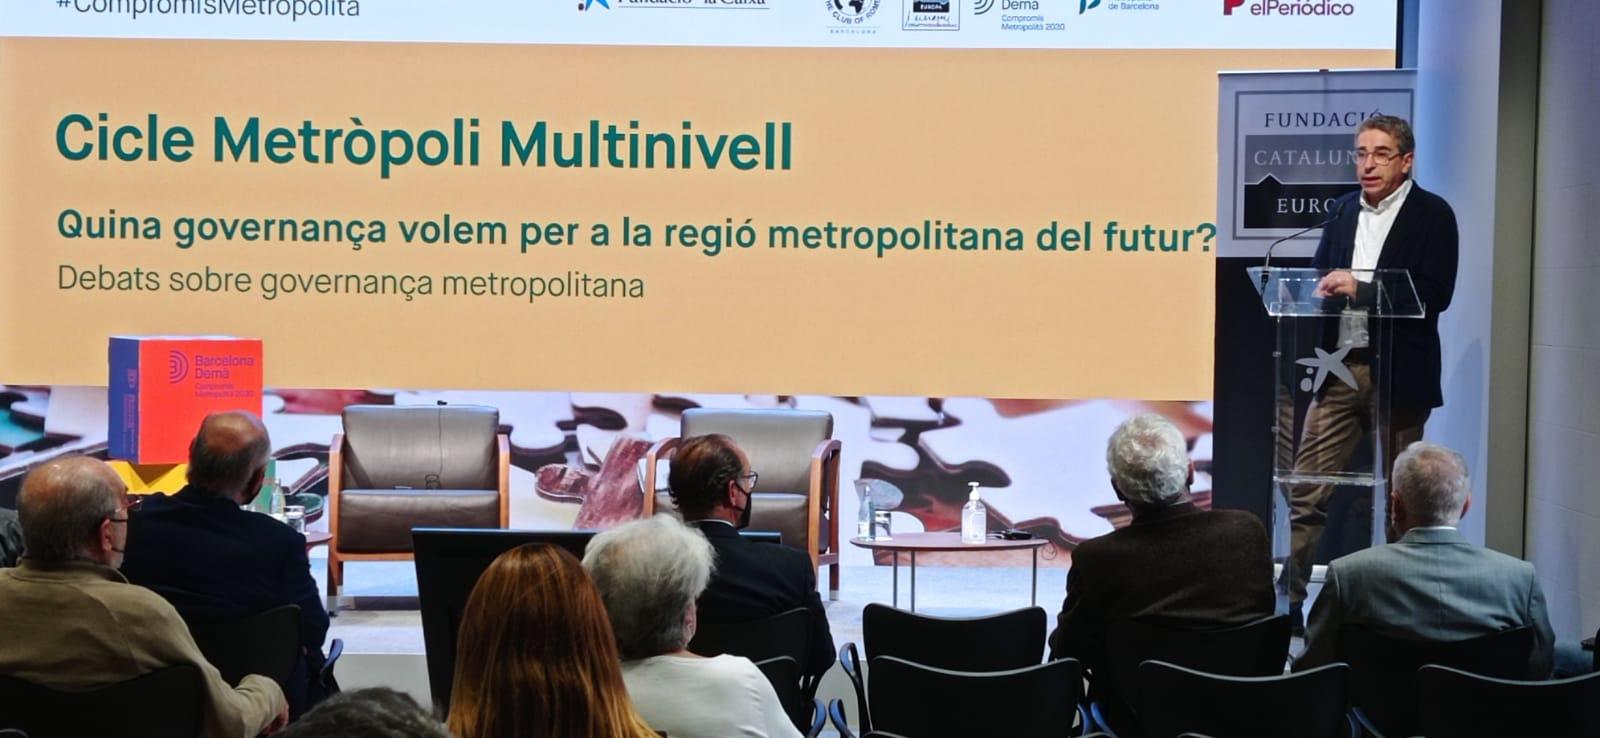 Jordi Martí Grau, president de la Comissió Executiva del PEMB, presentant la jornada de la Metròpoli Multinivell del Barcelona Demà